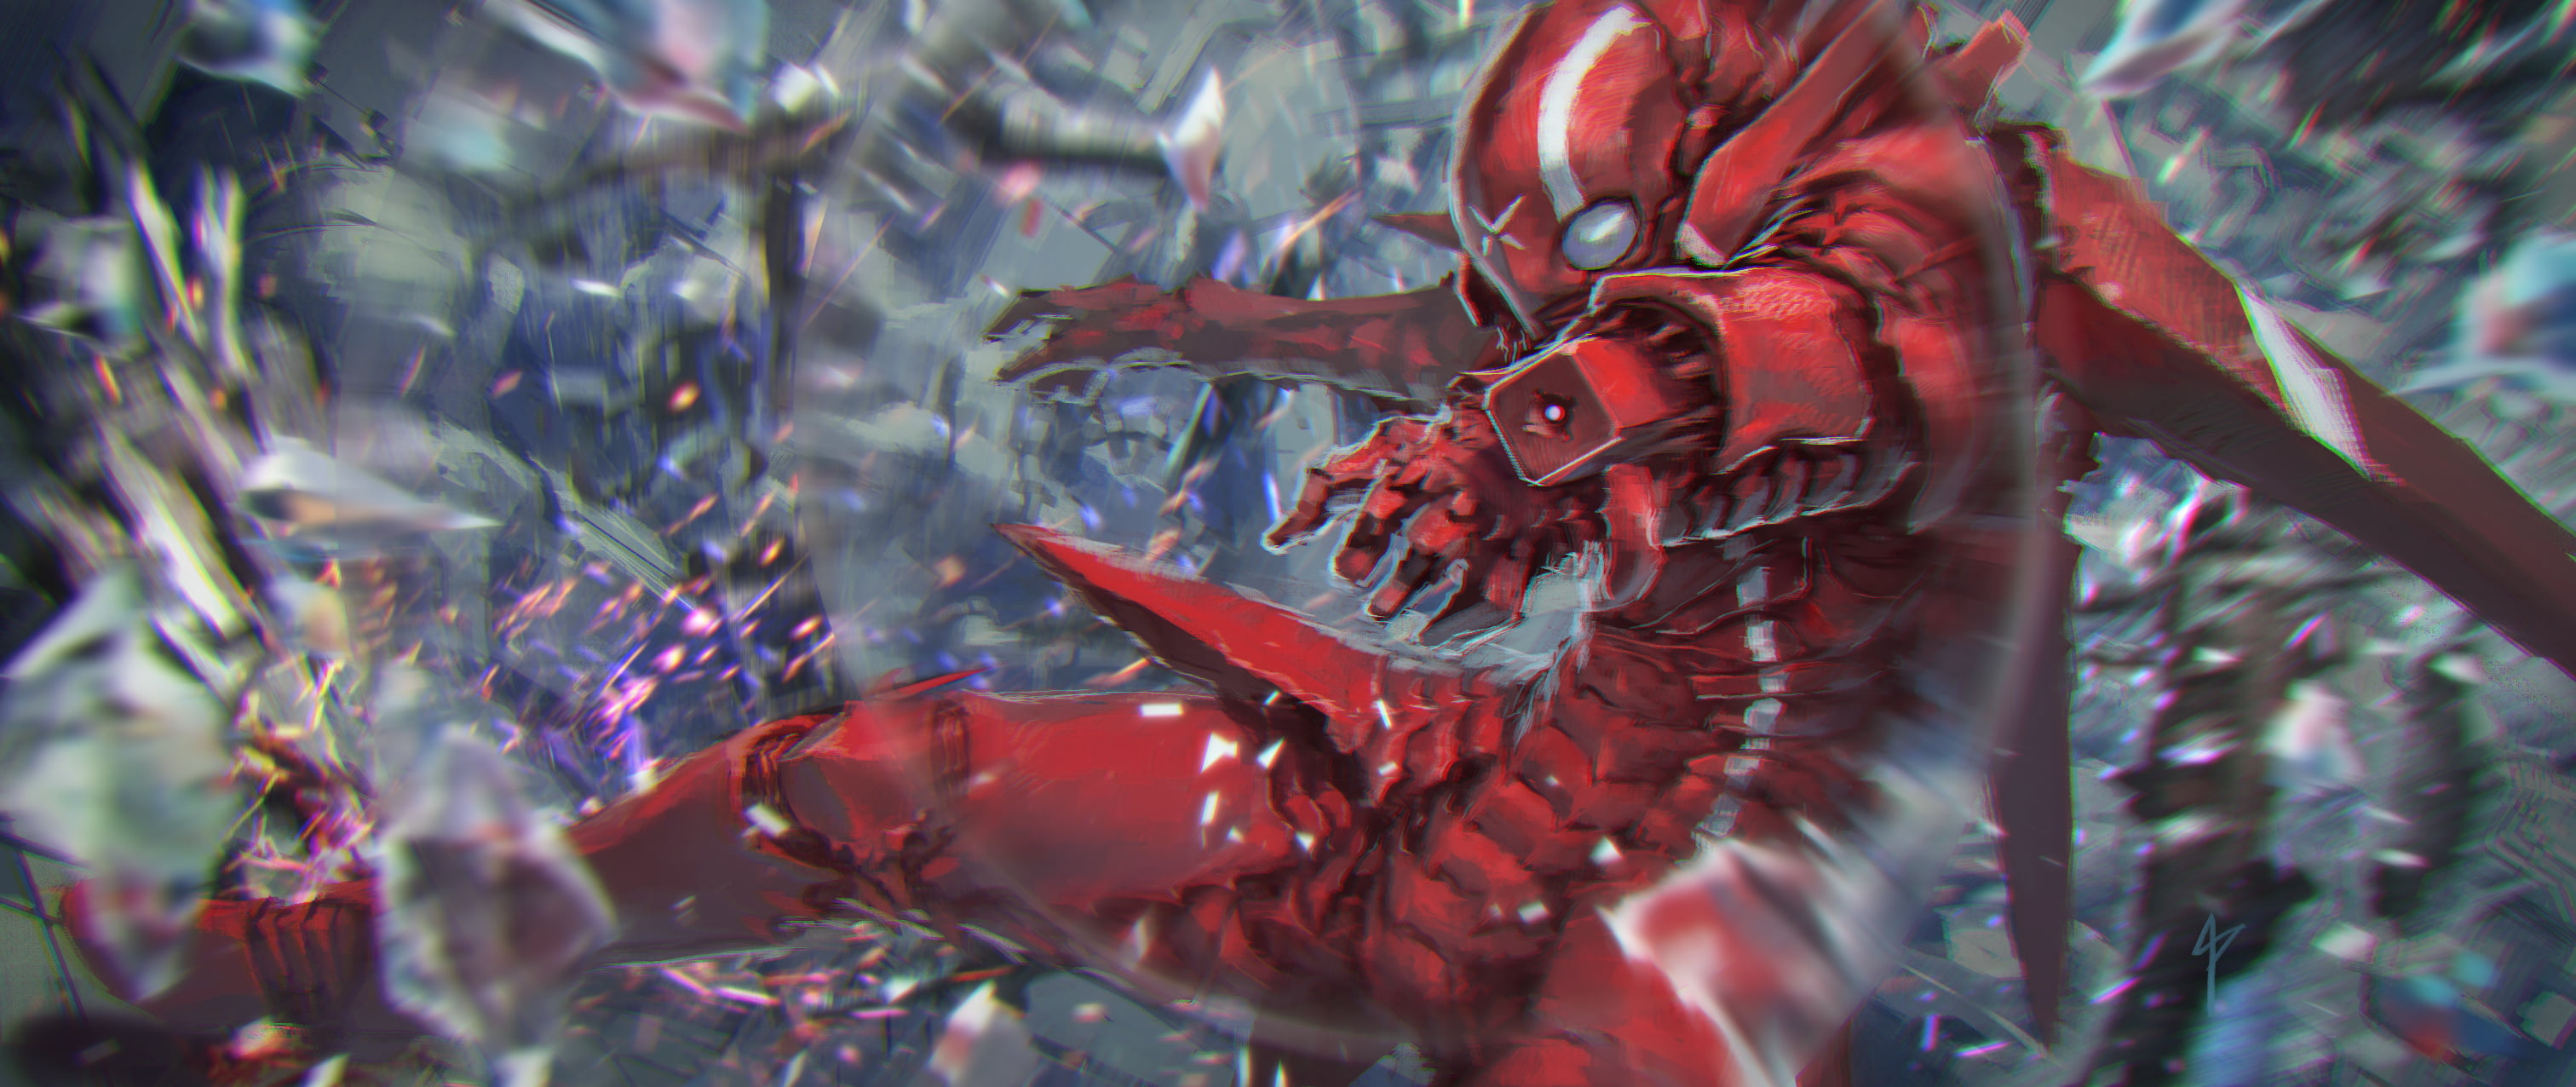 red monster illustration, digital art, fantasy art, artwork, knight of sidonia